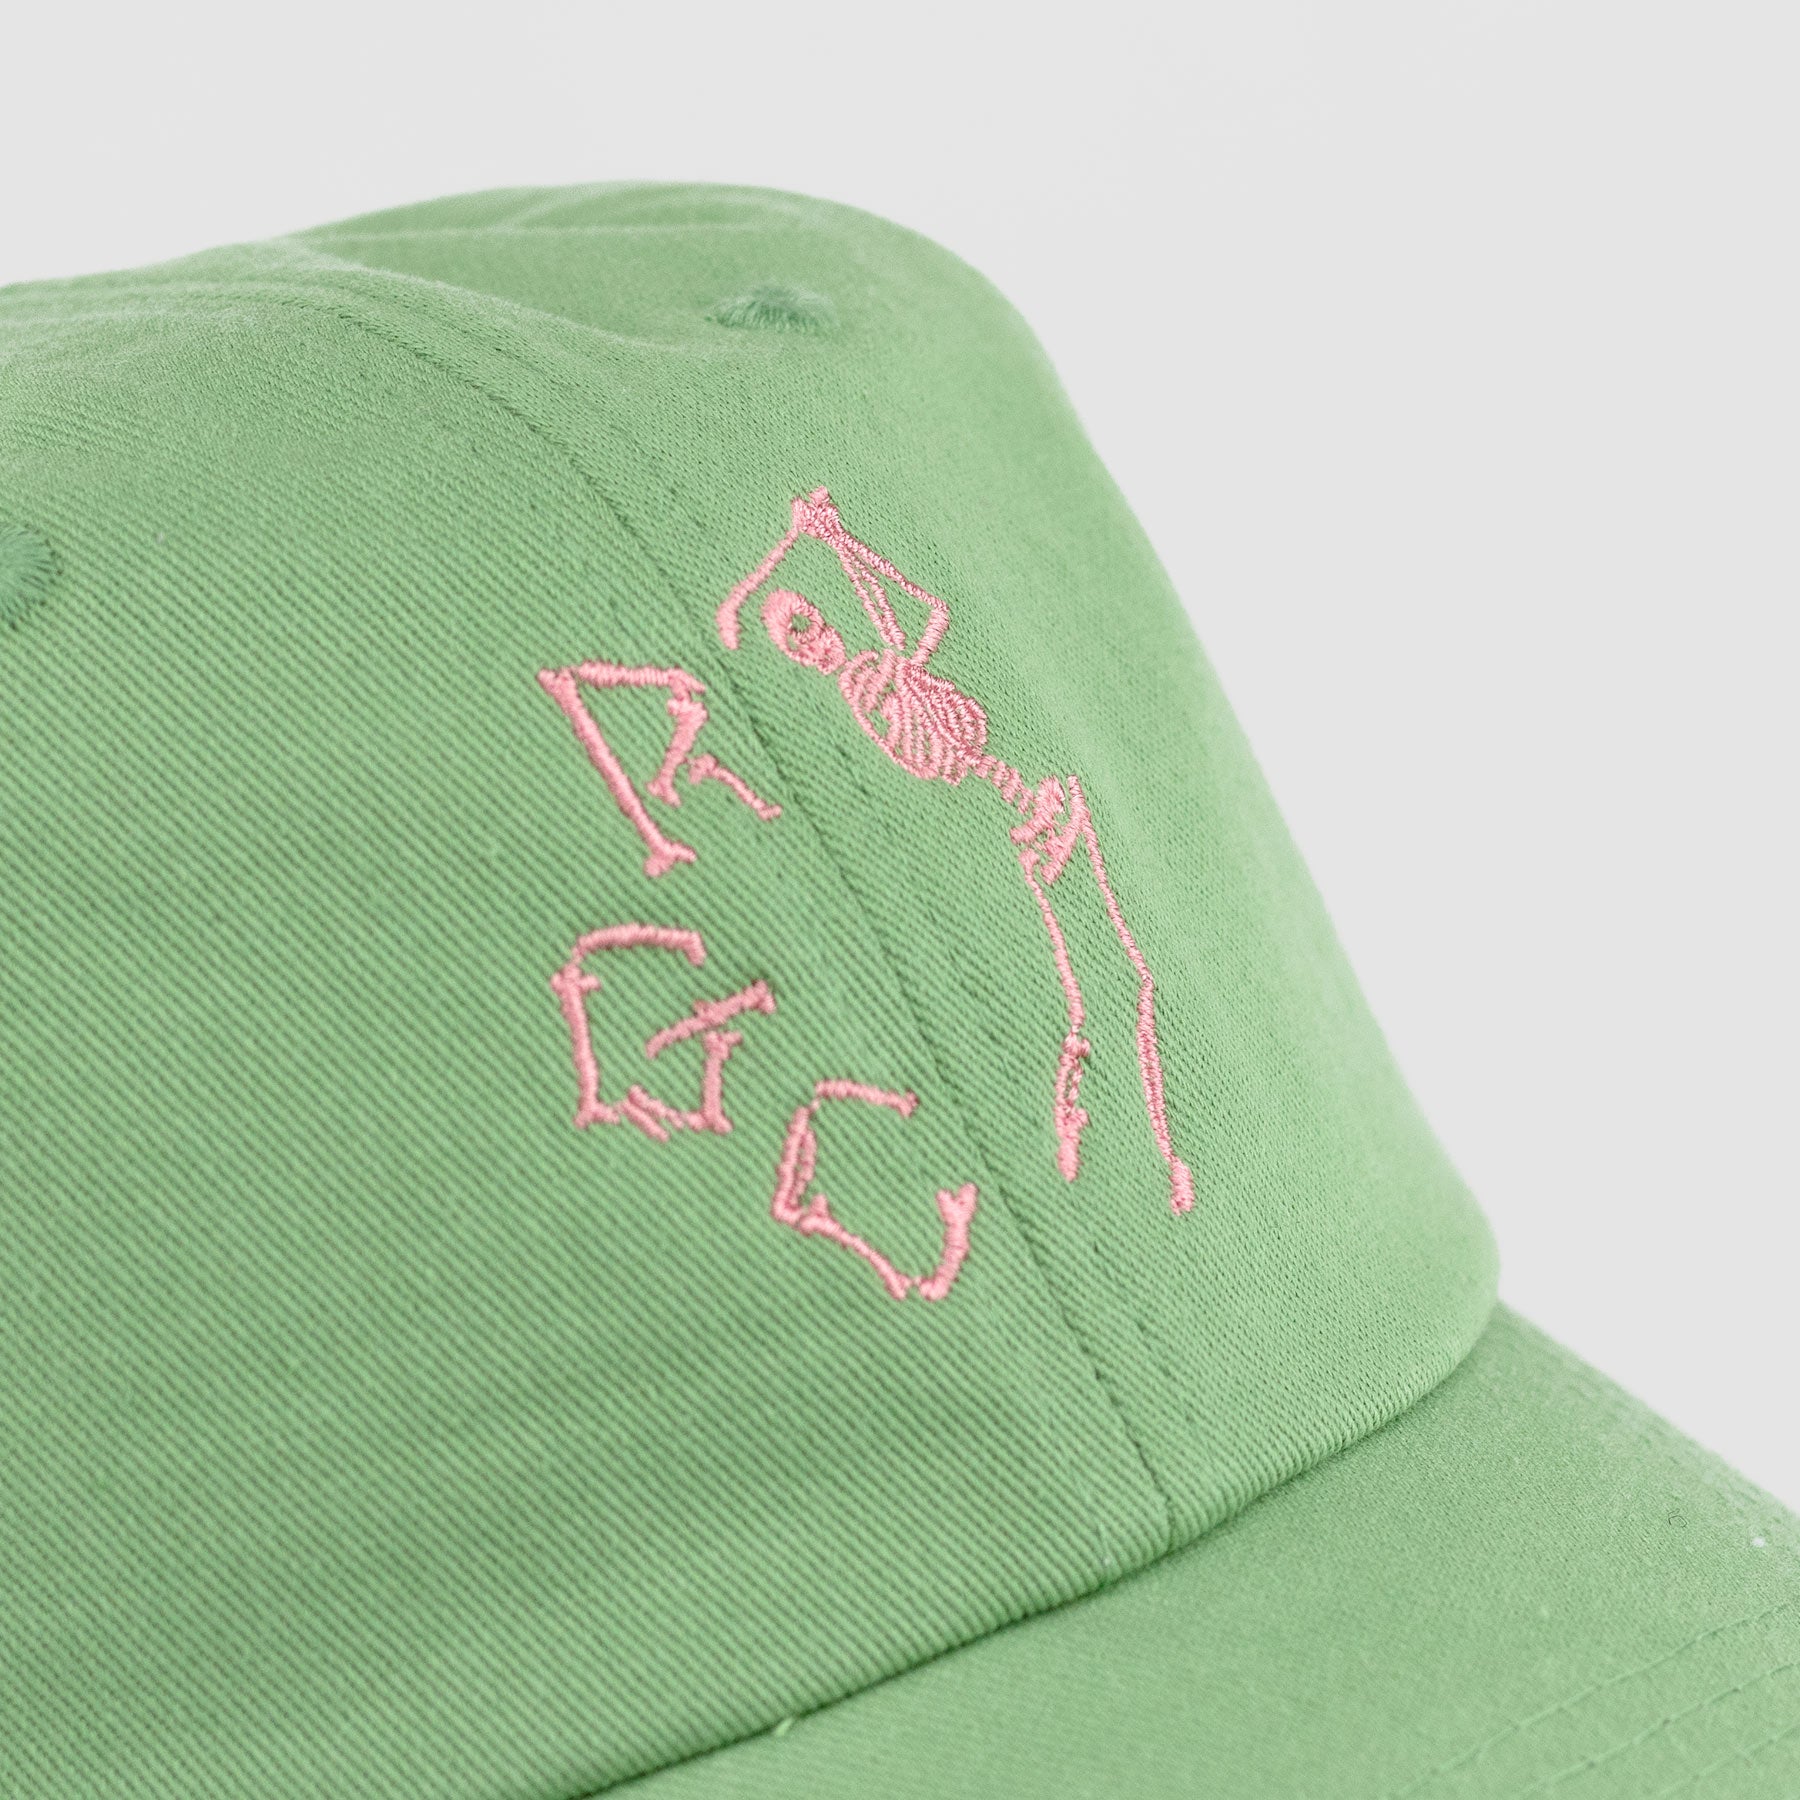 'Til Death Dad Hat (Green)